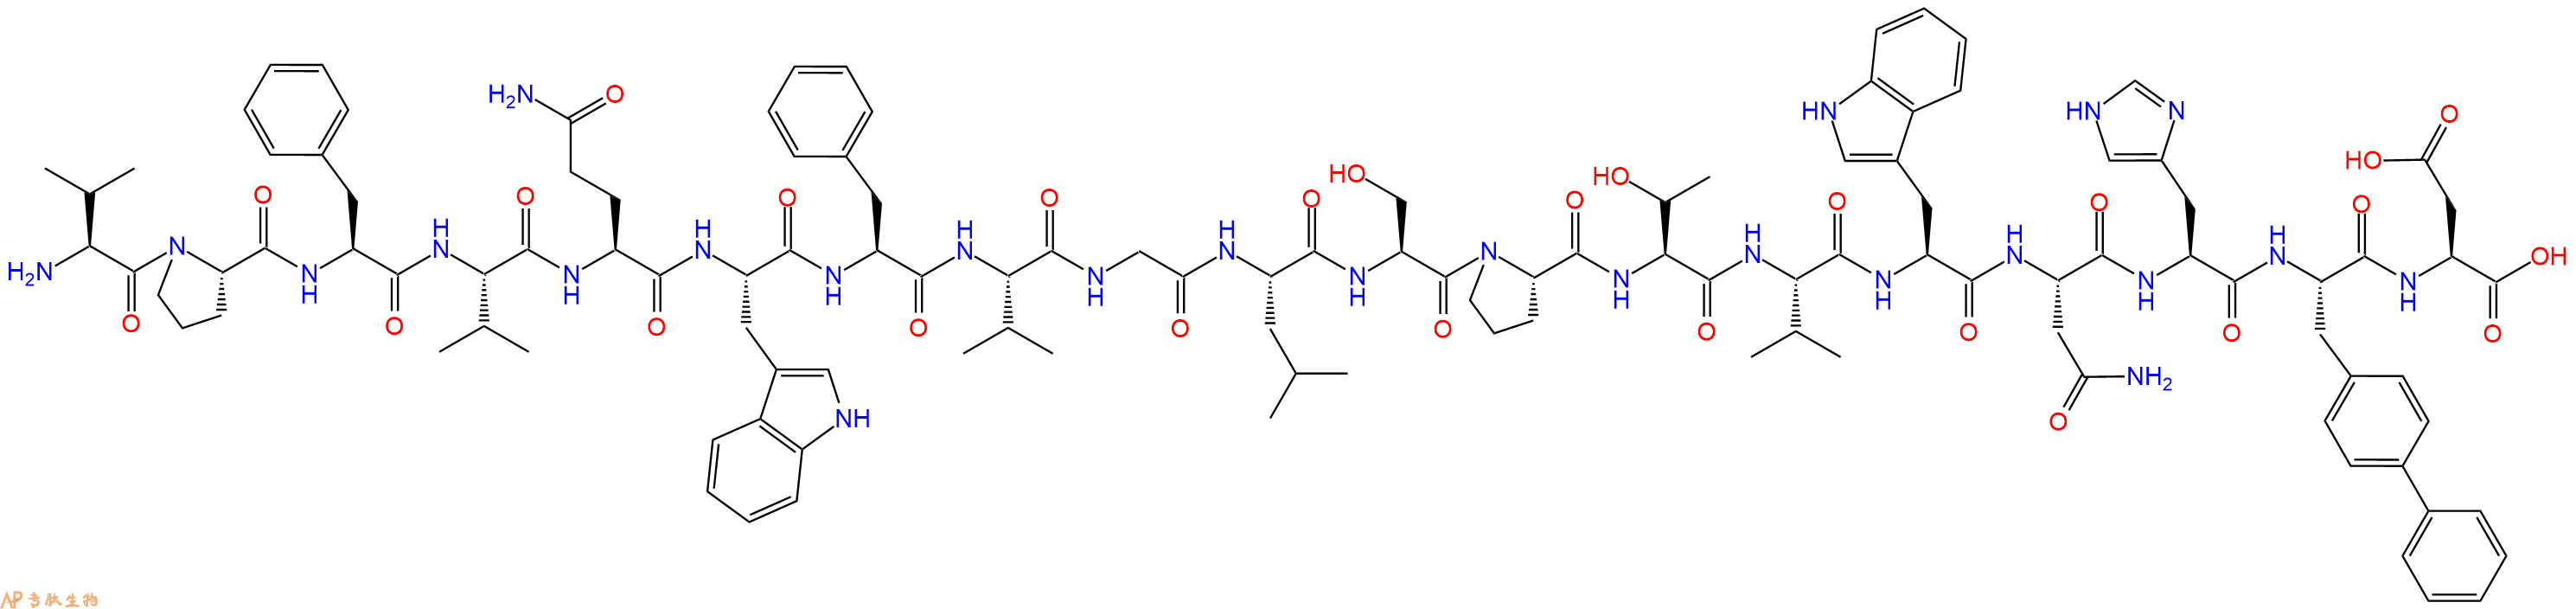 专肽生物产品H2N-Val-Pro-Phe-Val-Gln-Trp-Phe-Val-Gly-Leu-Ser-Pr